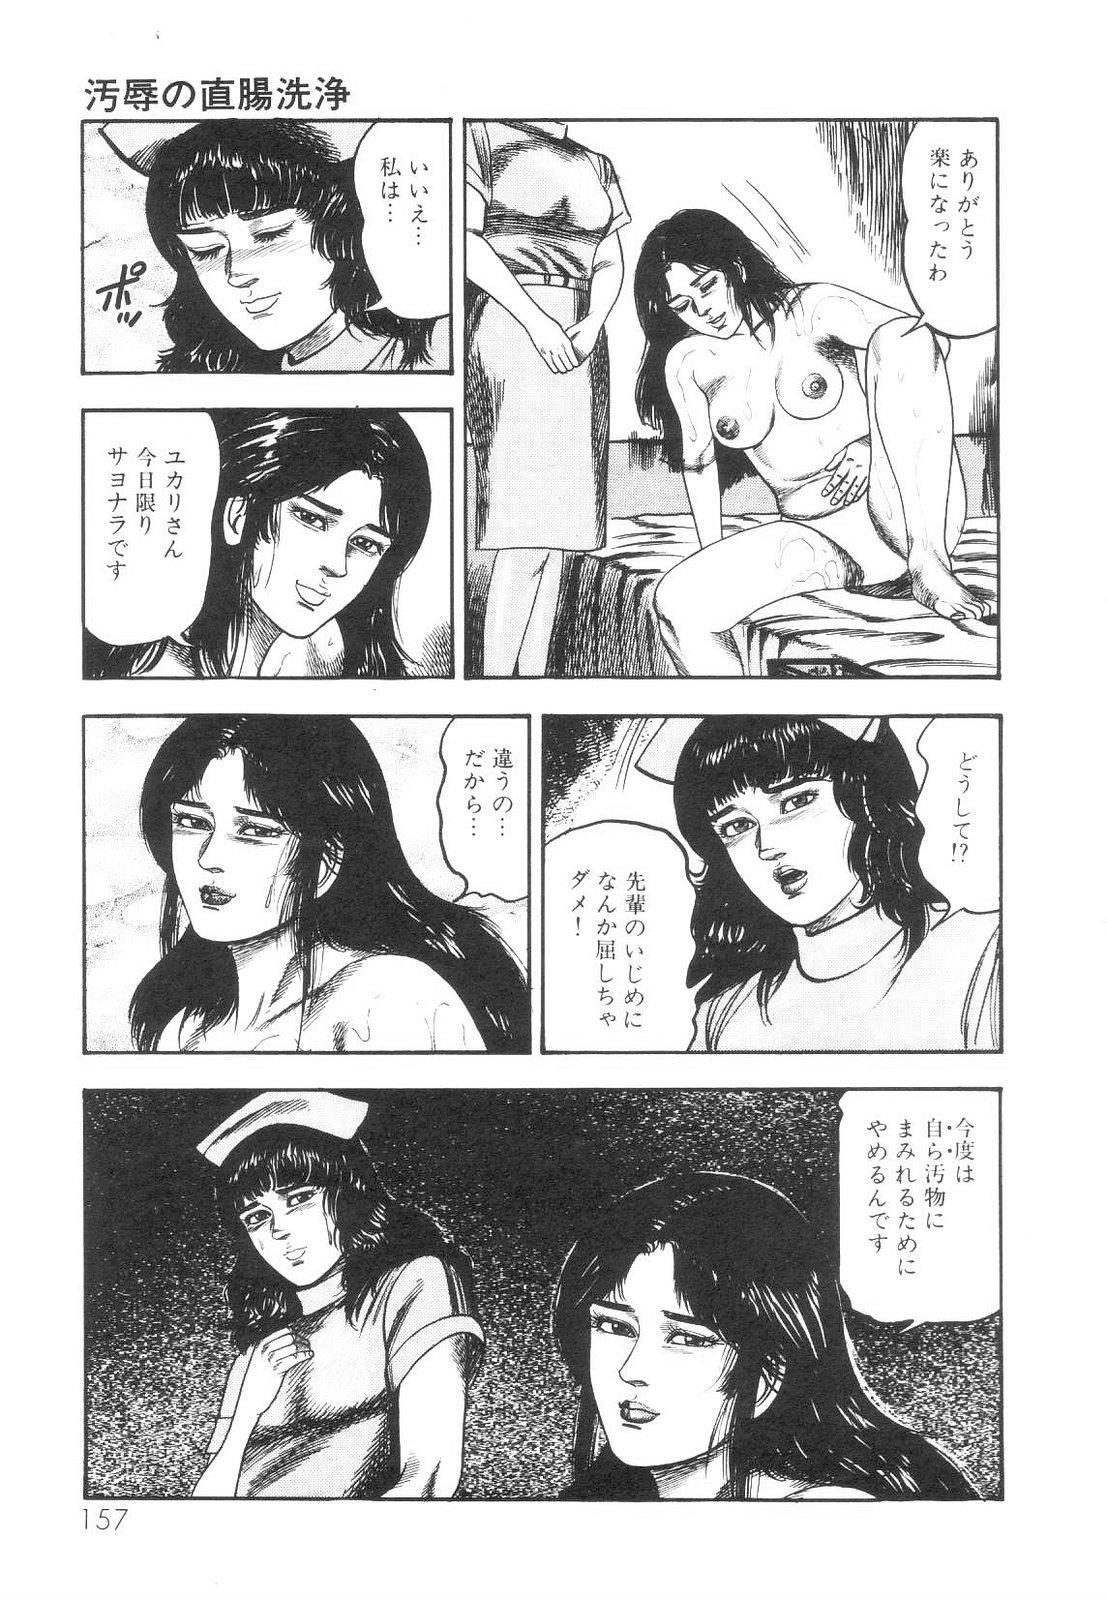 Shiro no Mokushiroku Vol. 1 - Sei Shojo Shion no Shou 157